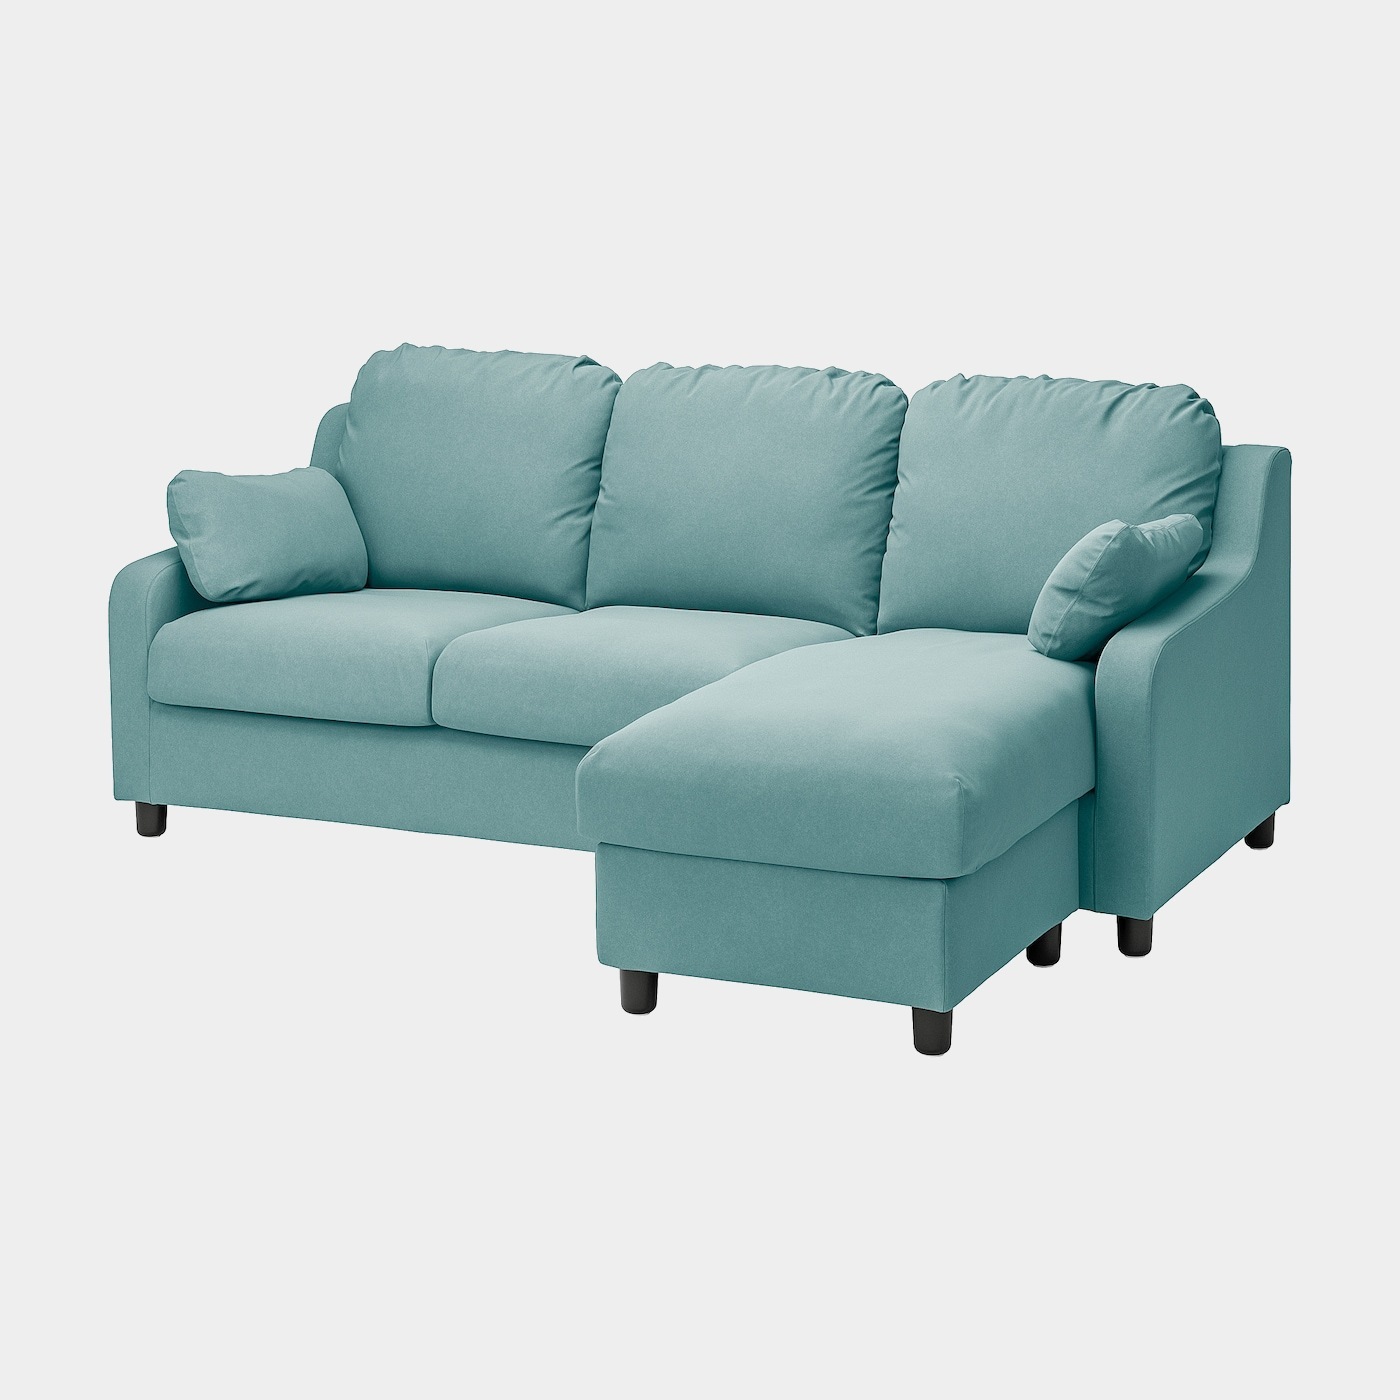 VINLIDEN 3er-Sofa mit Récamiere  -  - Möbel Ideen für dein Zuhause von Home Trends. Möbel Trends von Social Media Influencer für dein Skandi Zuhause.